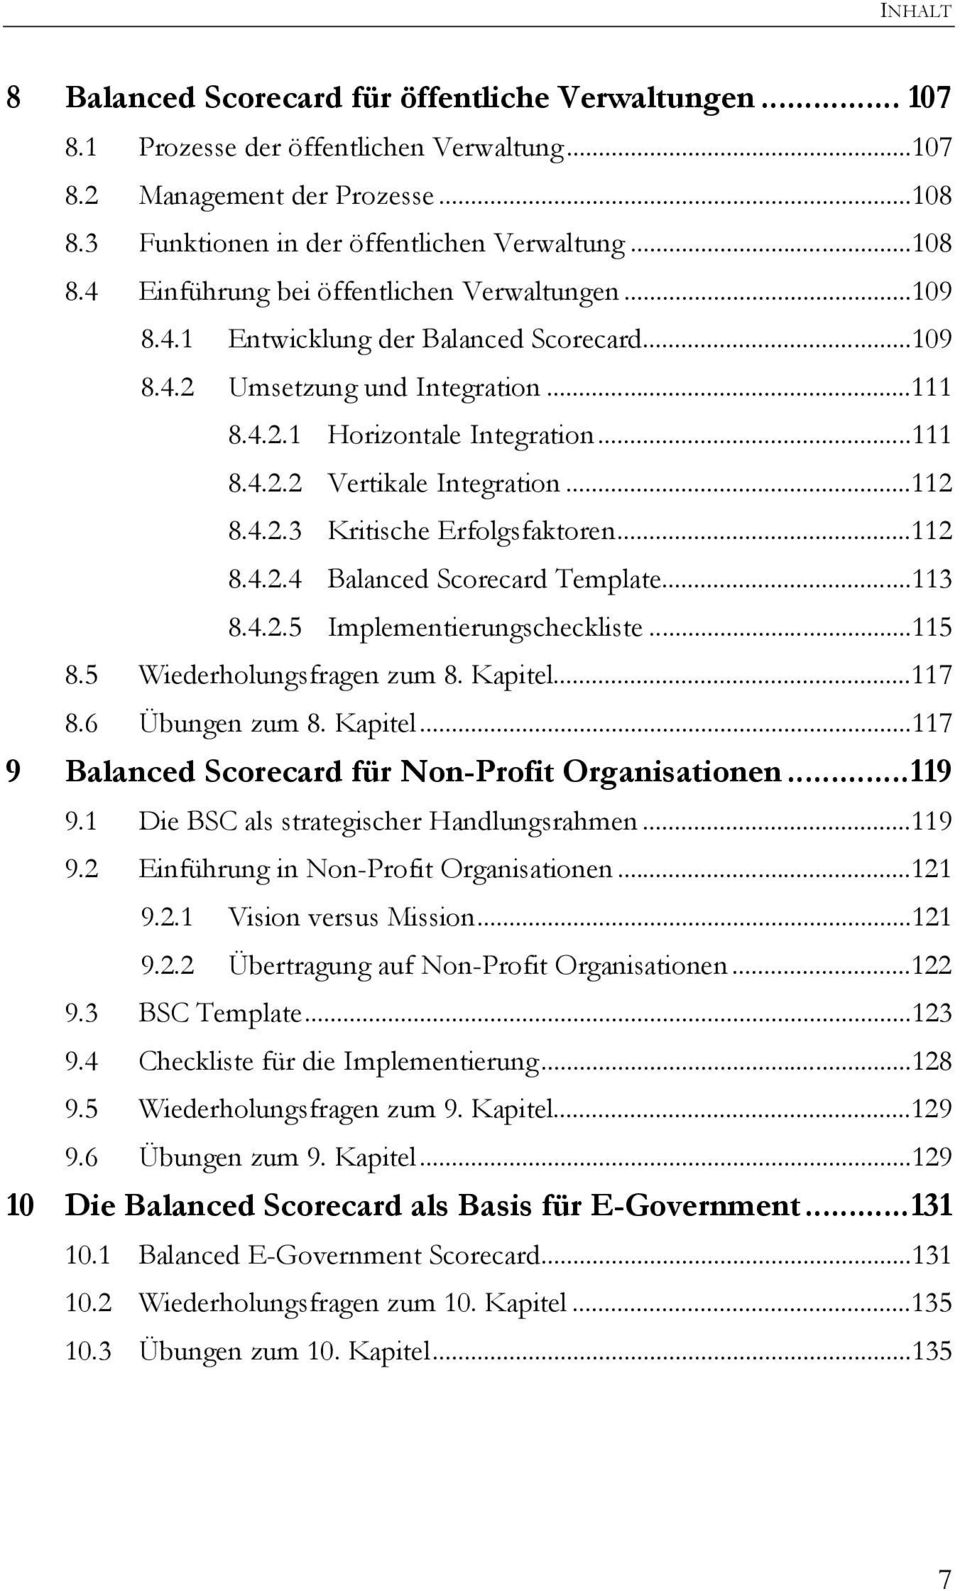 ..112 8.4.2.4 Balanced Scorecard Template...113 8.4.2.5 Implementierungscheckliste...115 8.5 Wiederholungsfragen zum 8. Kapitel...117 8.6 Übungen zum 8. Kapitel...117 9 Balanced Scorecard für Non-Profit Organisationen.